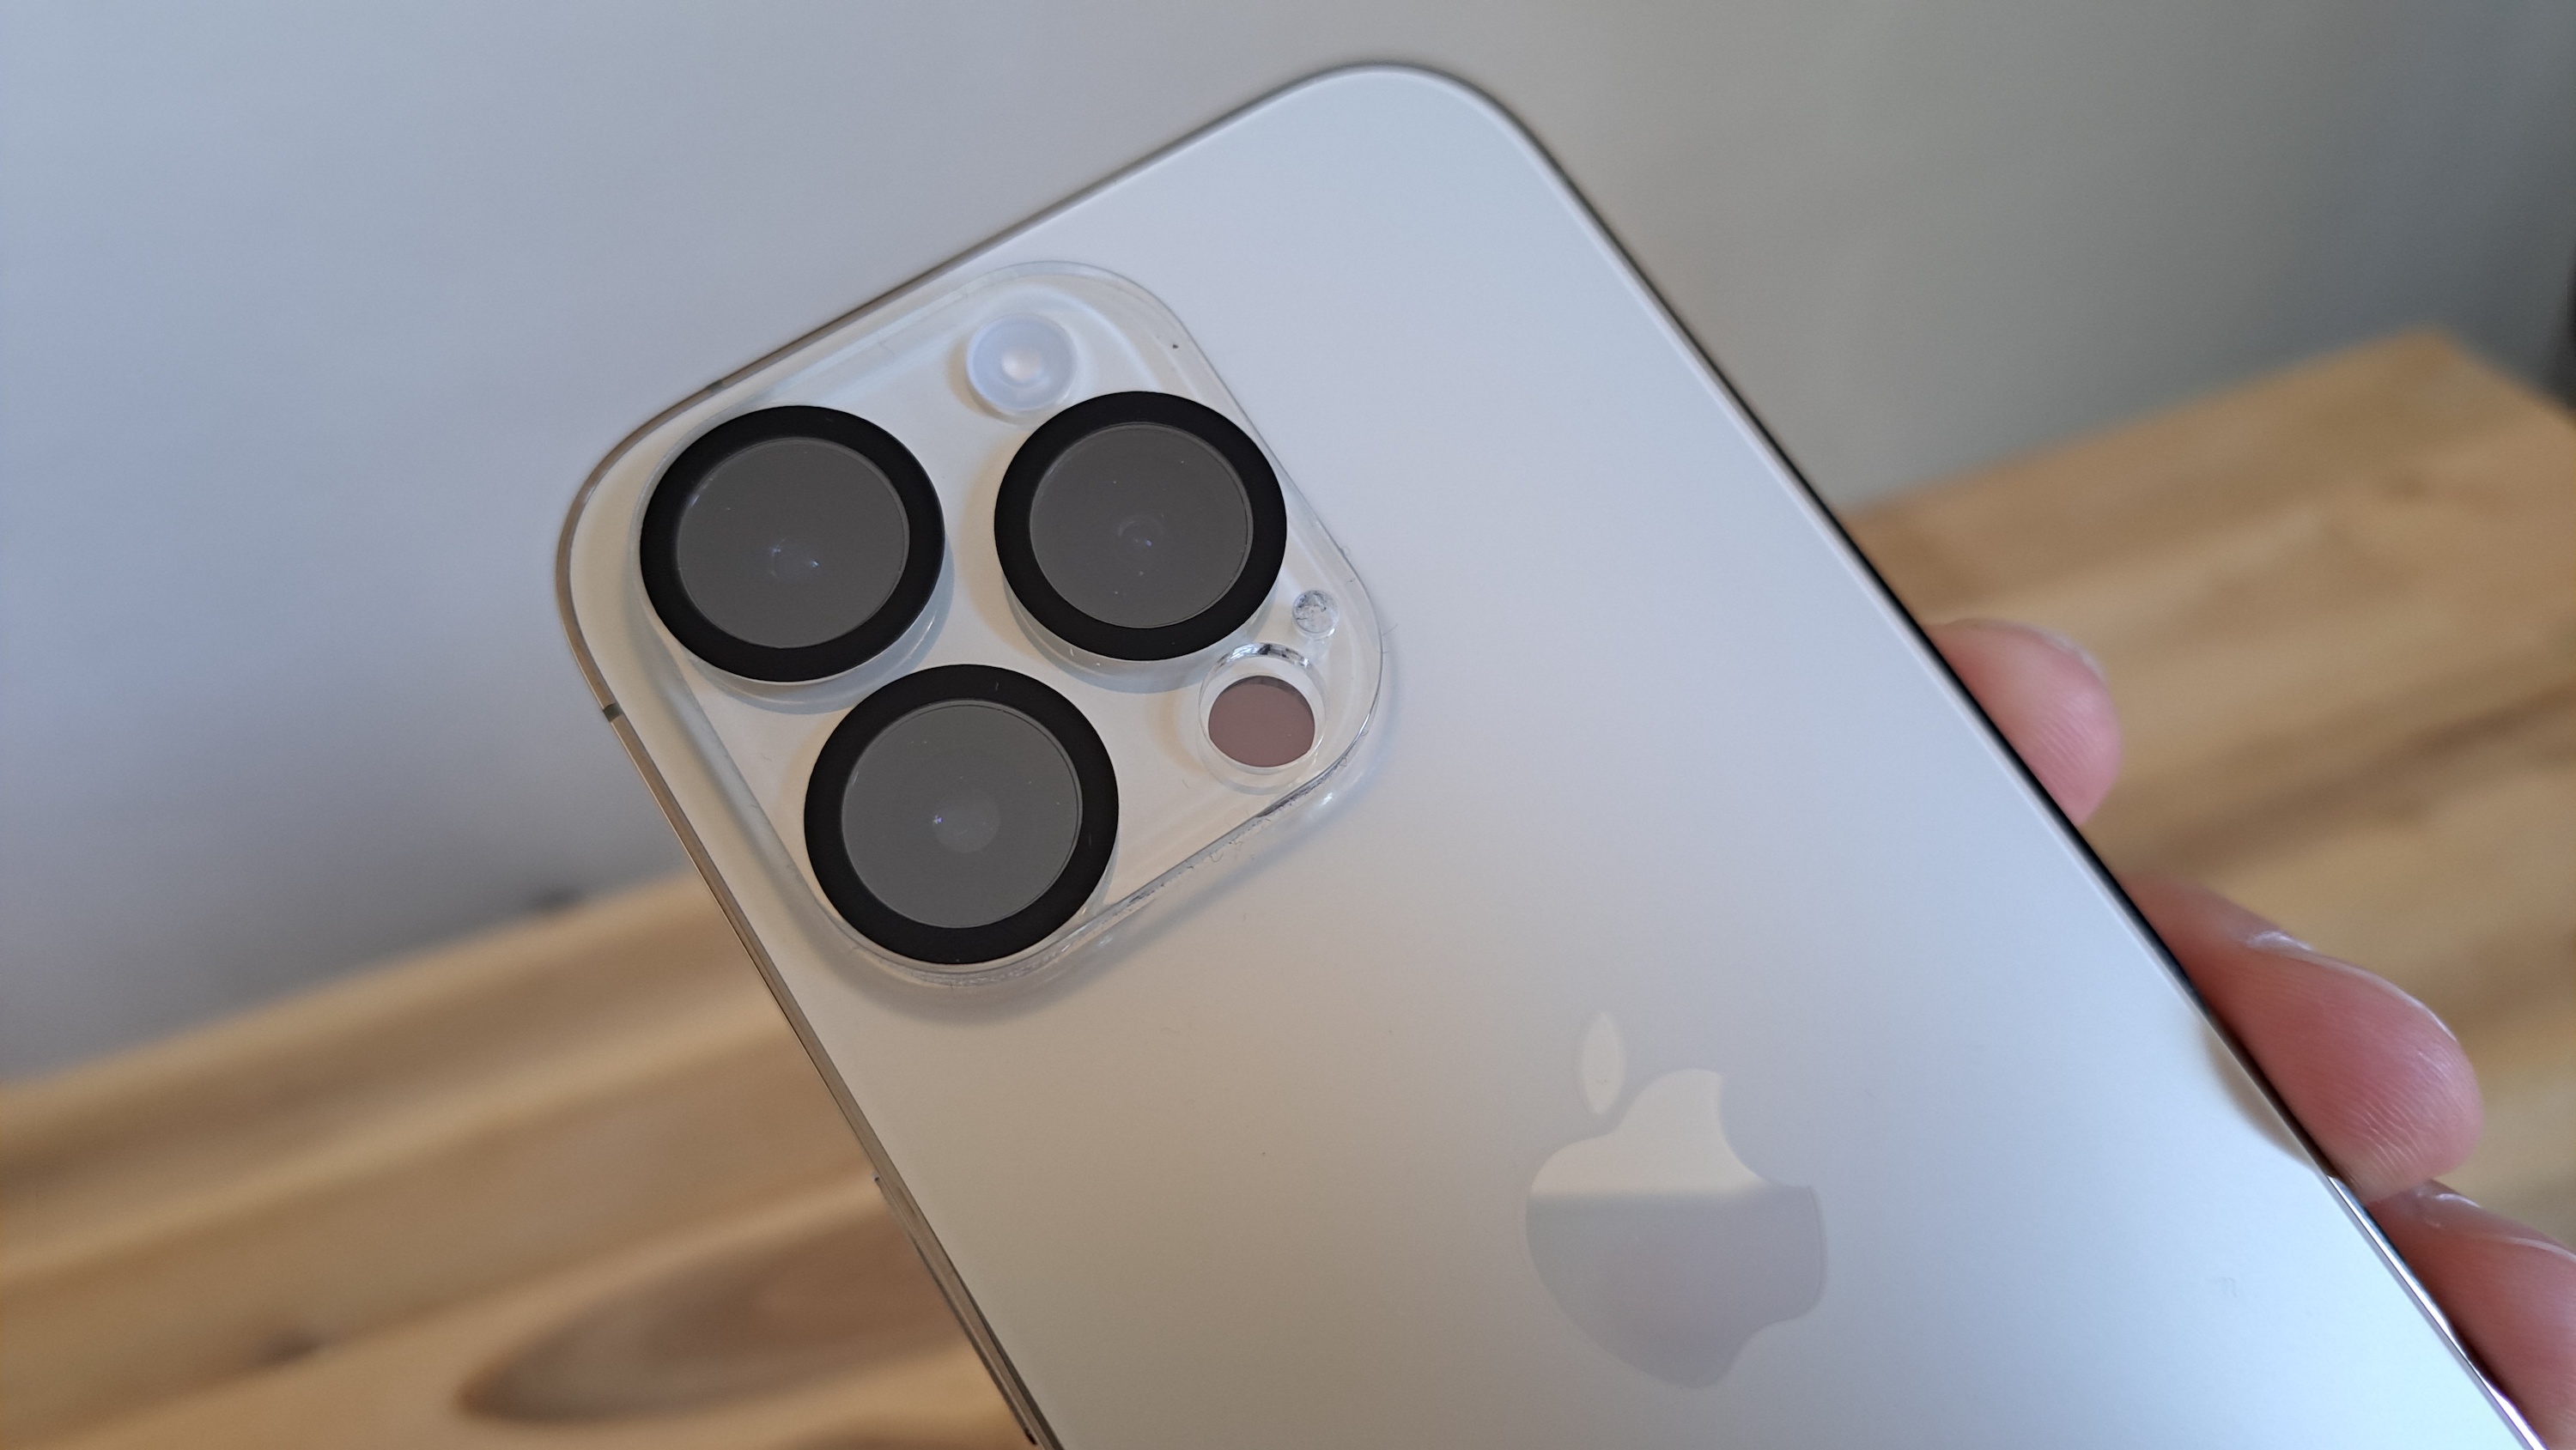 Warentest findet keine Schwächen: iPhone 15 Pro Max erstes sehr gutes  Smartphone 